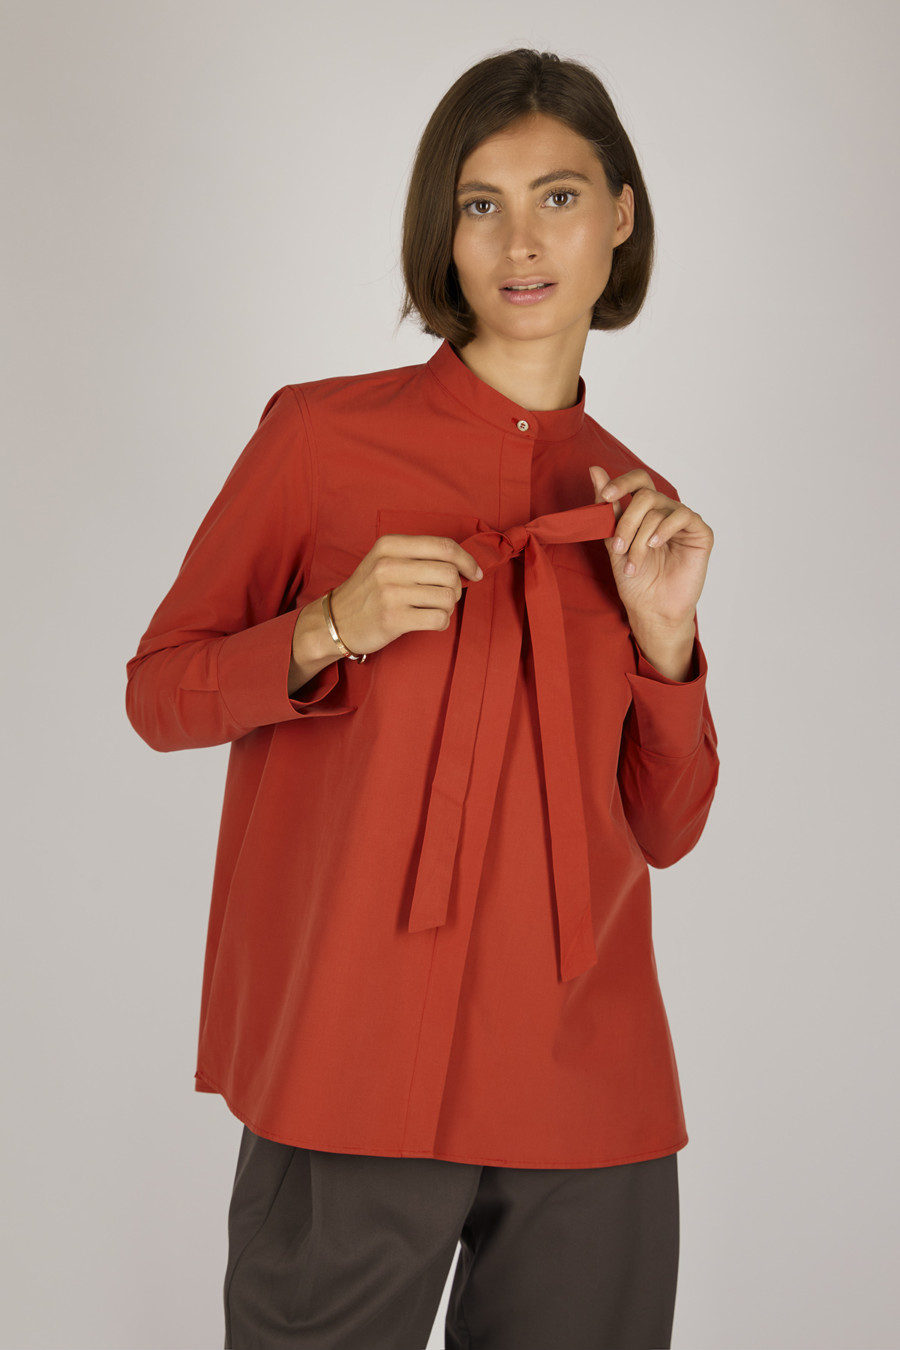 EVE – Bluse mit Stehkragen und Bindeelement – Farbe: Red Hot